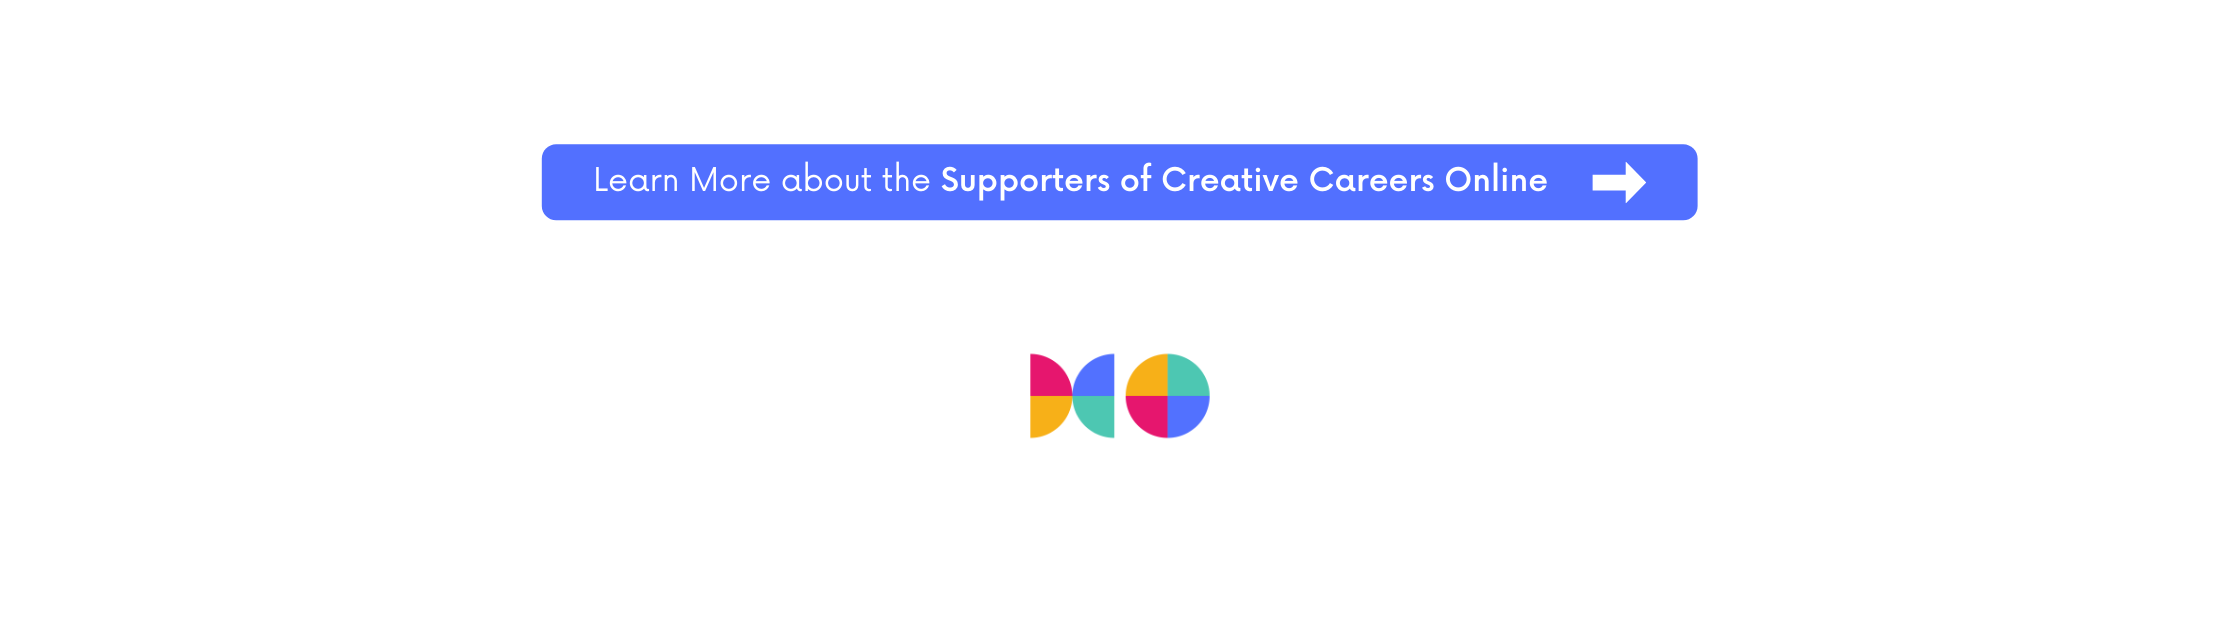 Más información sobre los partidarios de Creative Careers Online